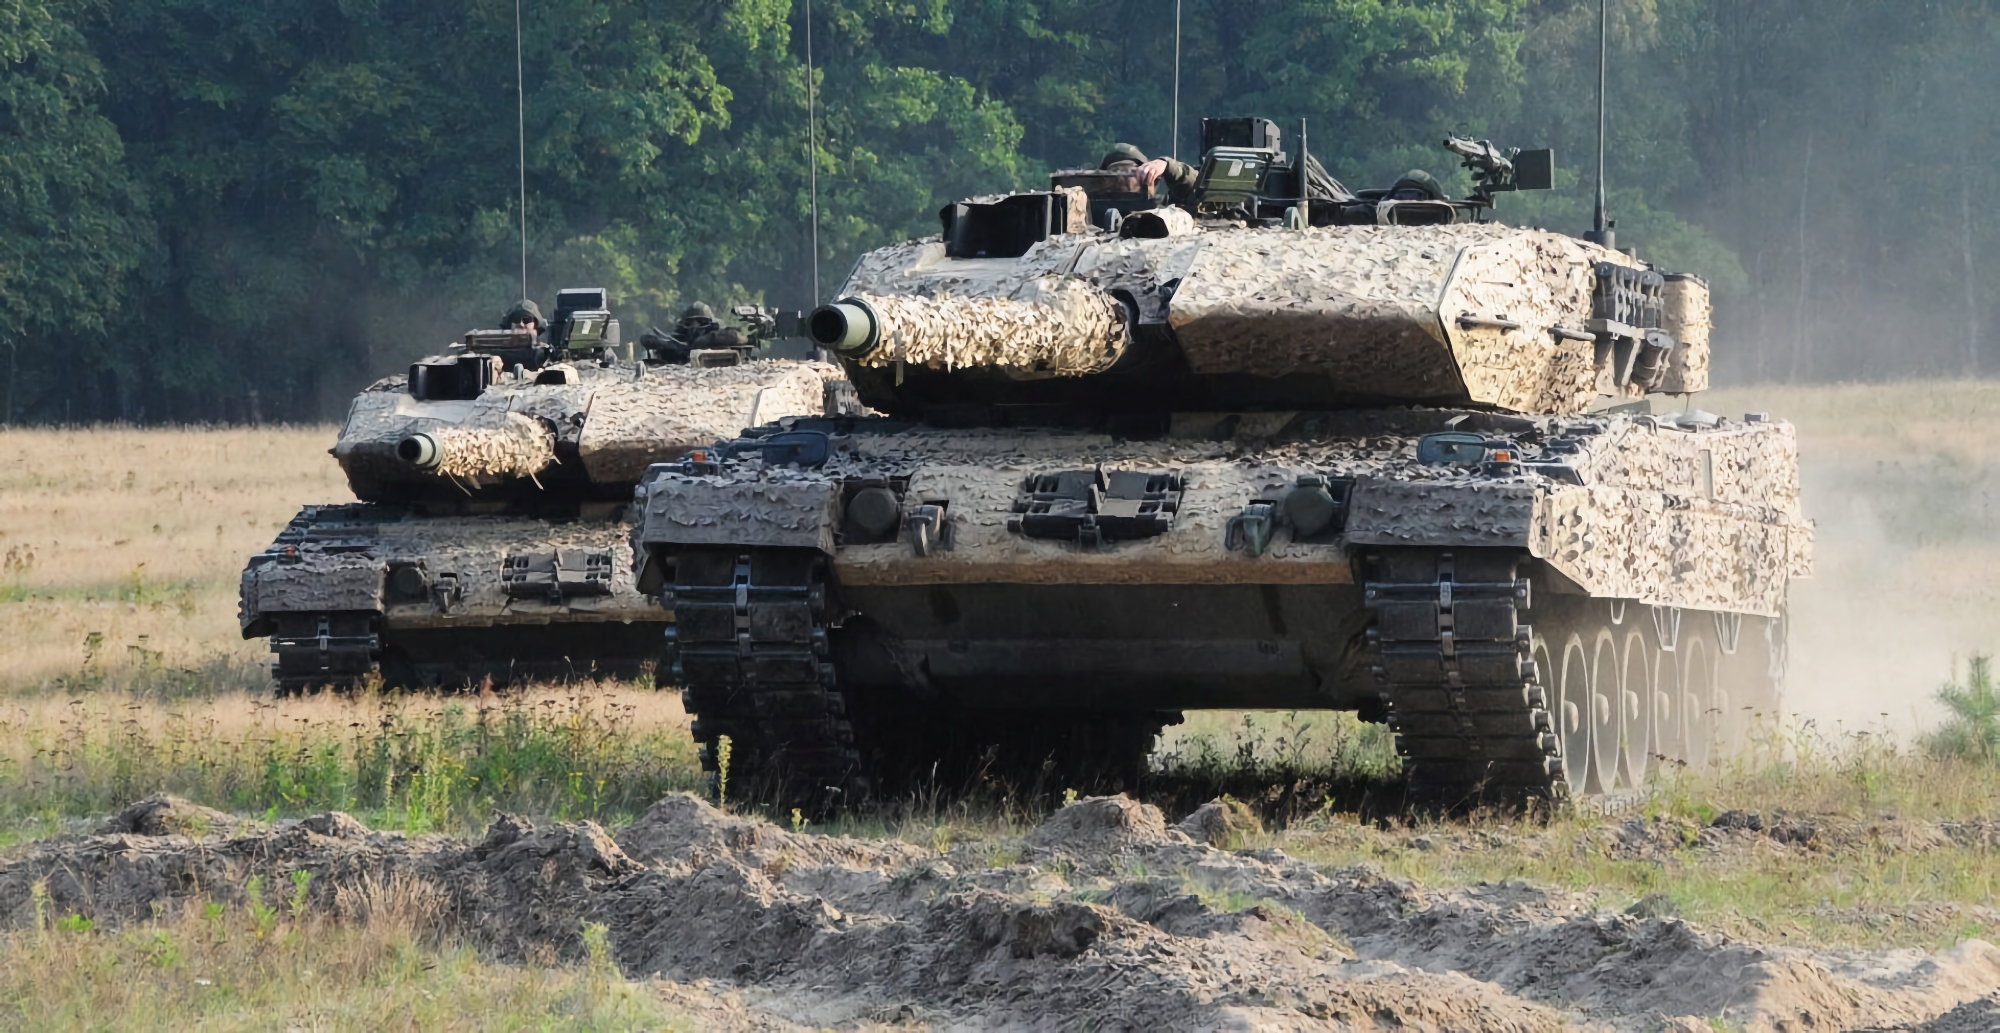 ABC News : 12 pays sont prêts à transférer 100 chars Leopard 2 à l'Ukraine dès que l'Allemagne aura donné son accord pour les livraisons.